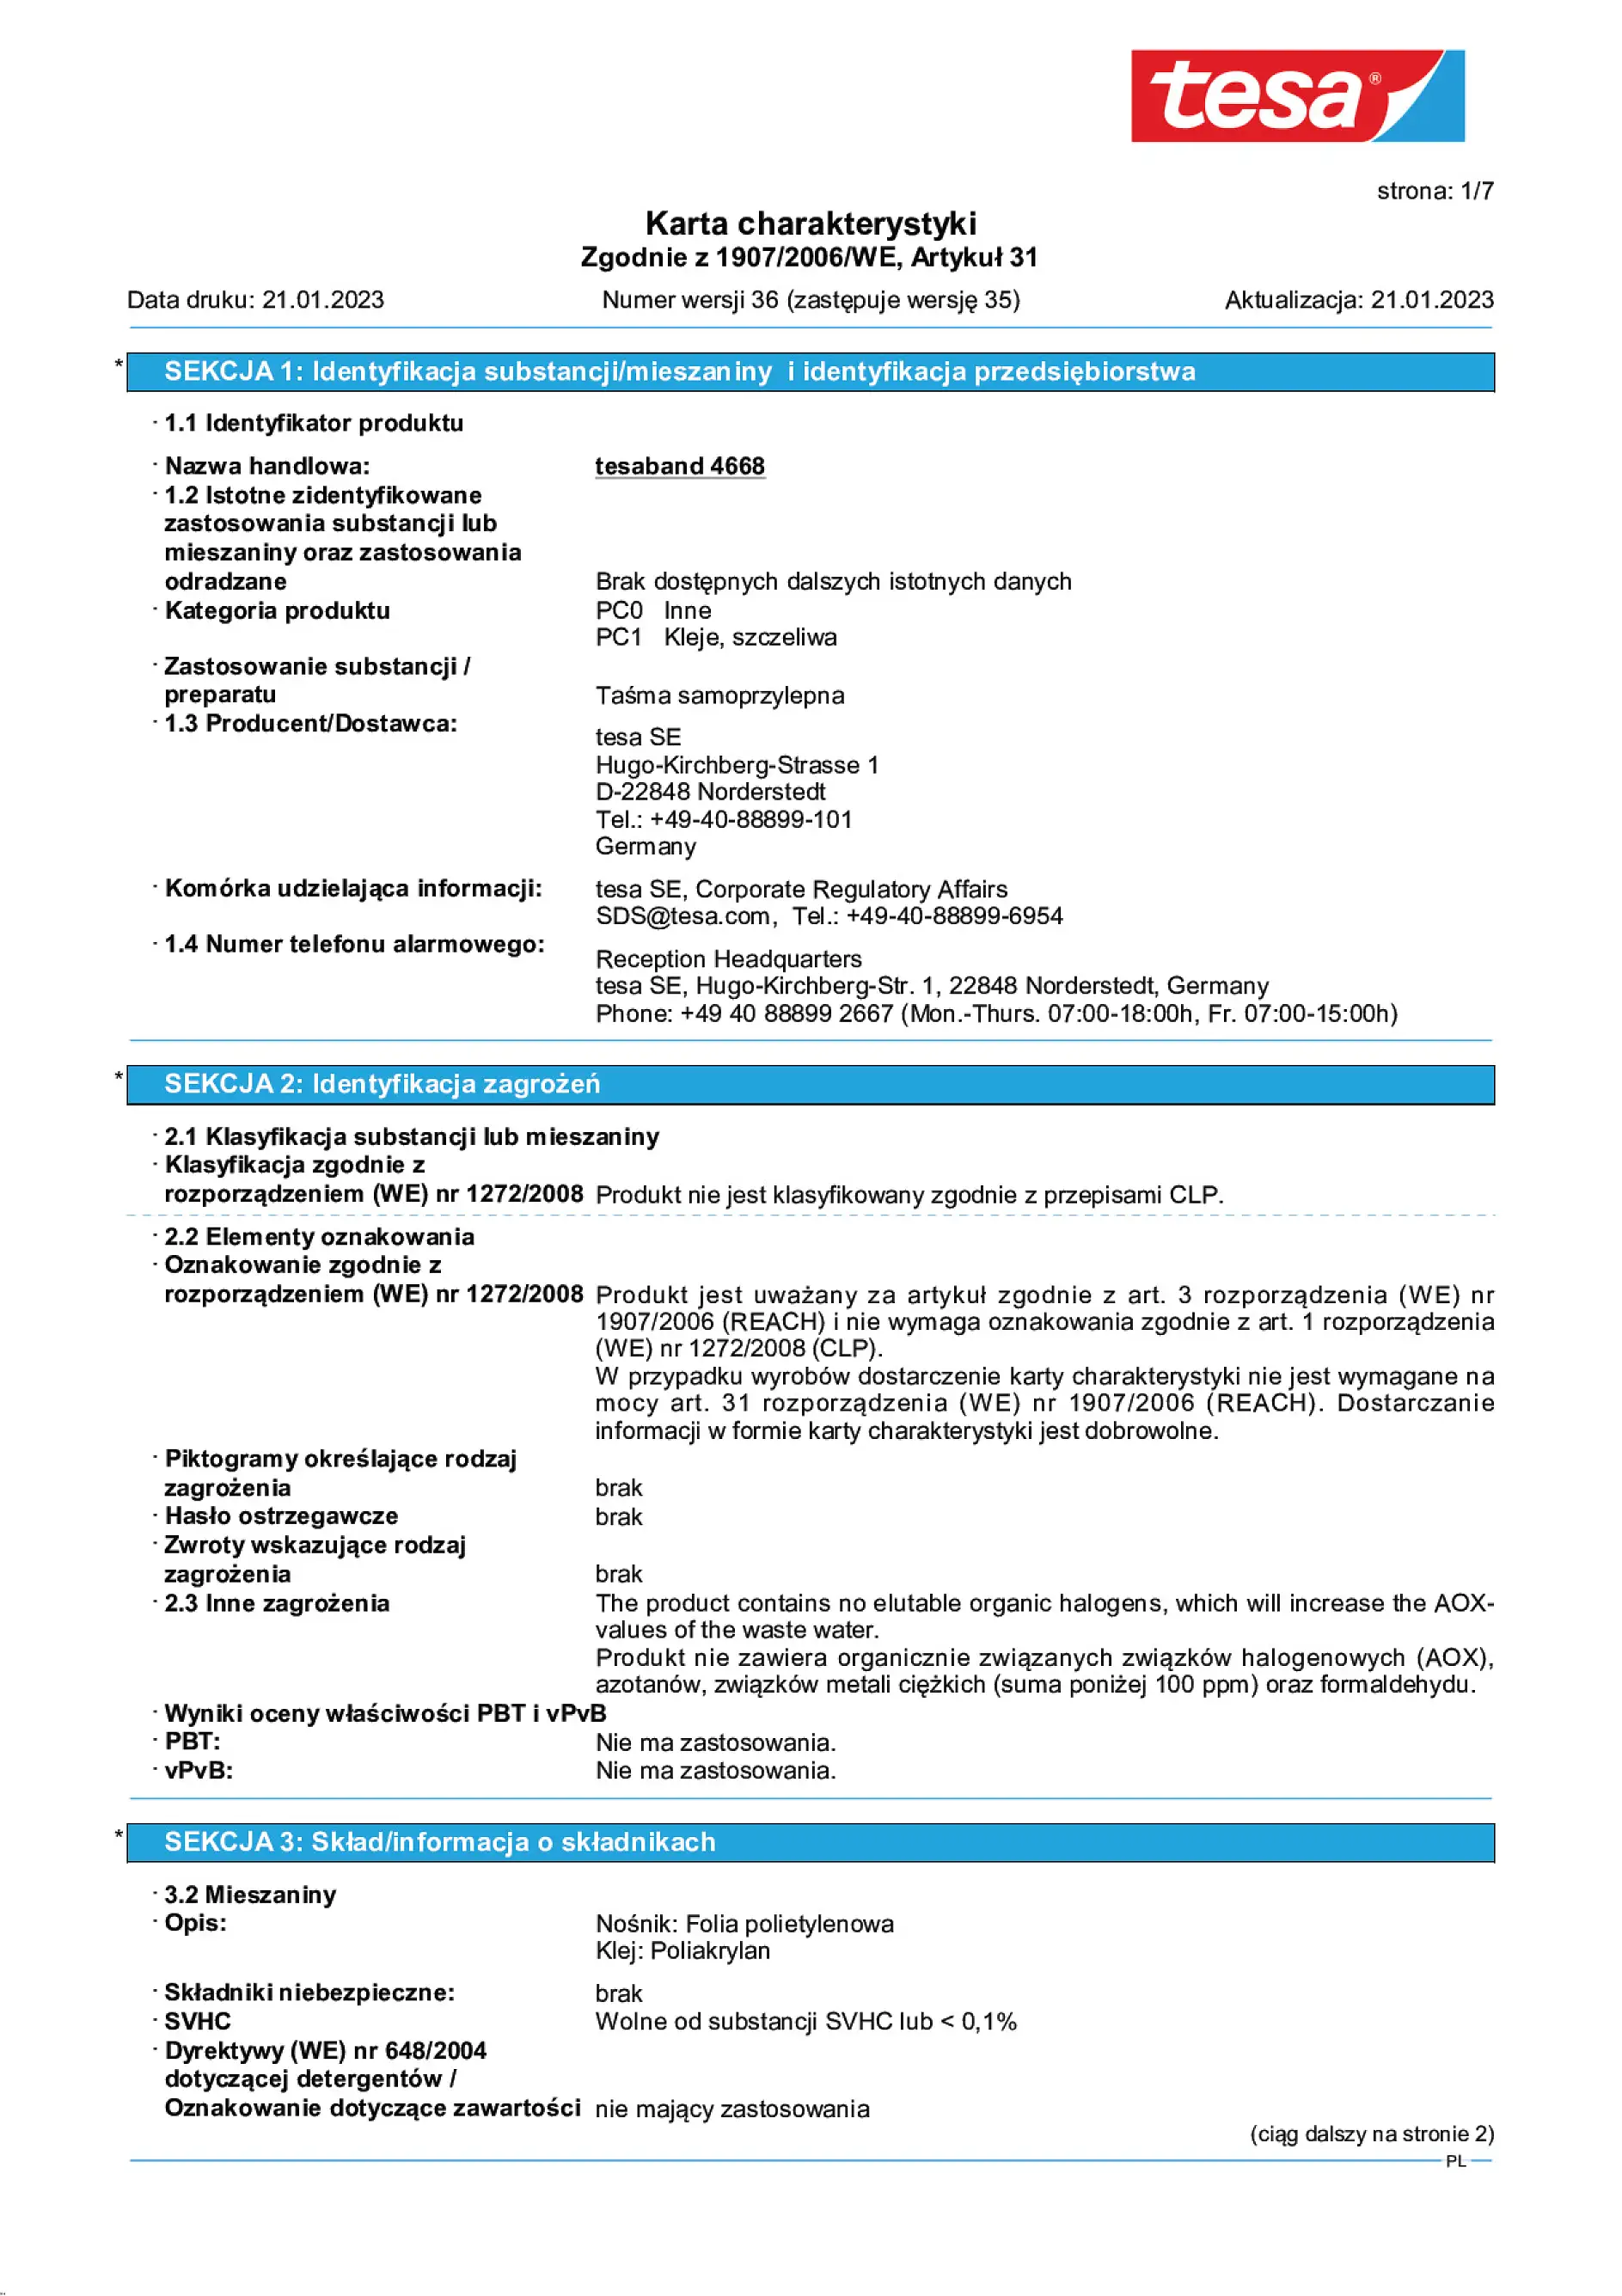 Safety data sheet_tesa® Professional 04668_pl-PL_v36